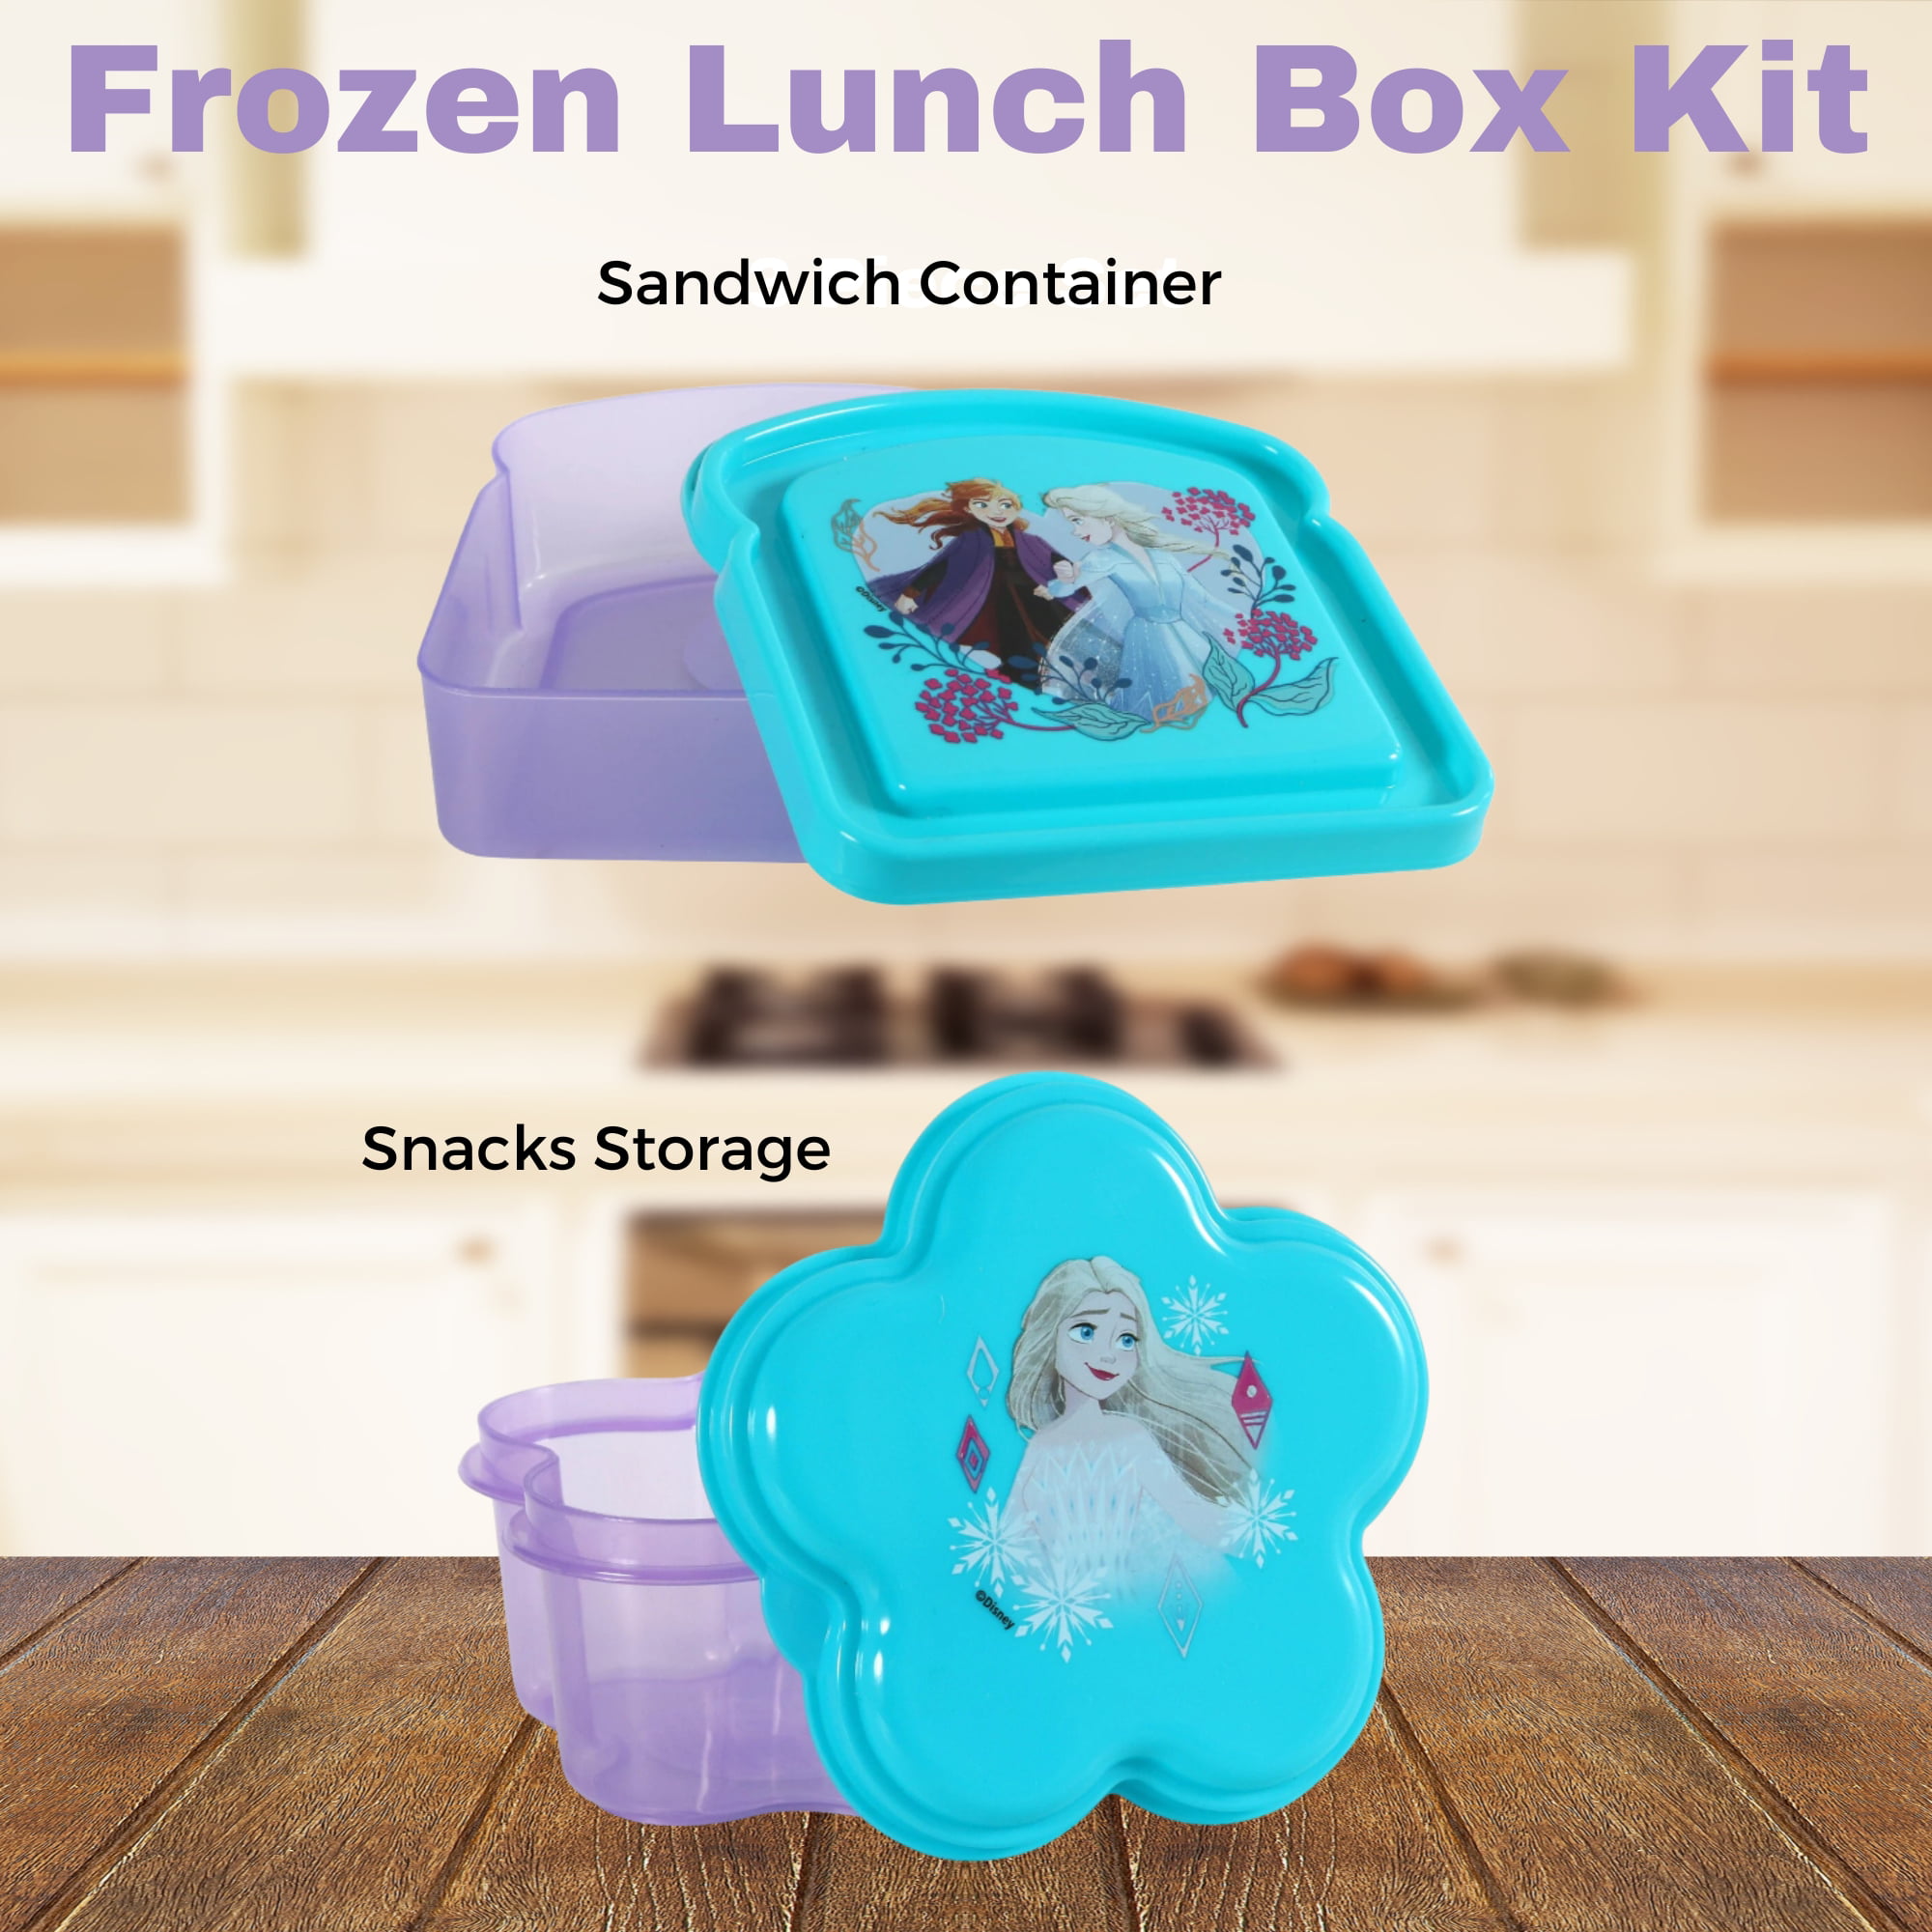 Ello 980380014 13-Piece Kids Lunch Pack Set - Pink/Purple